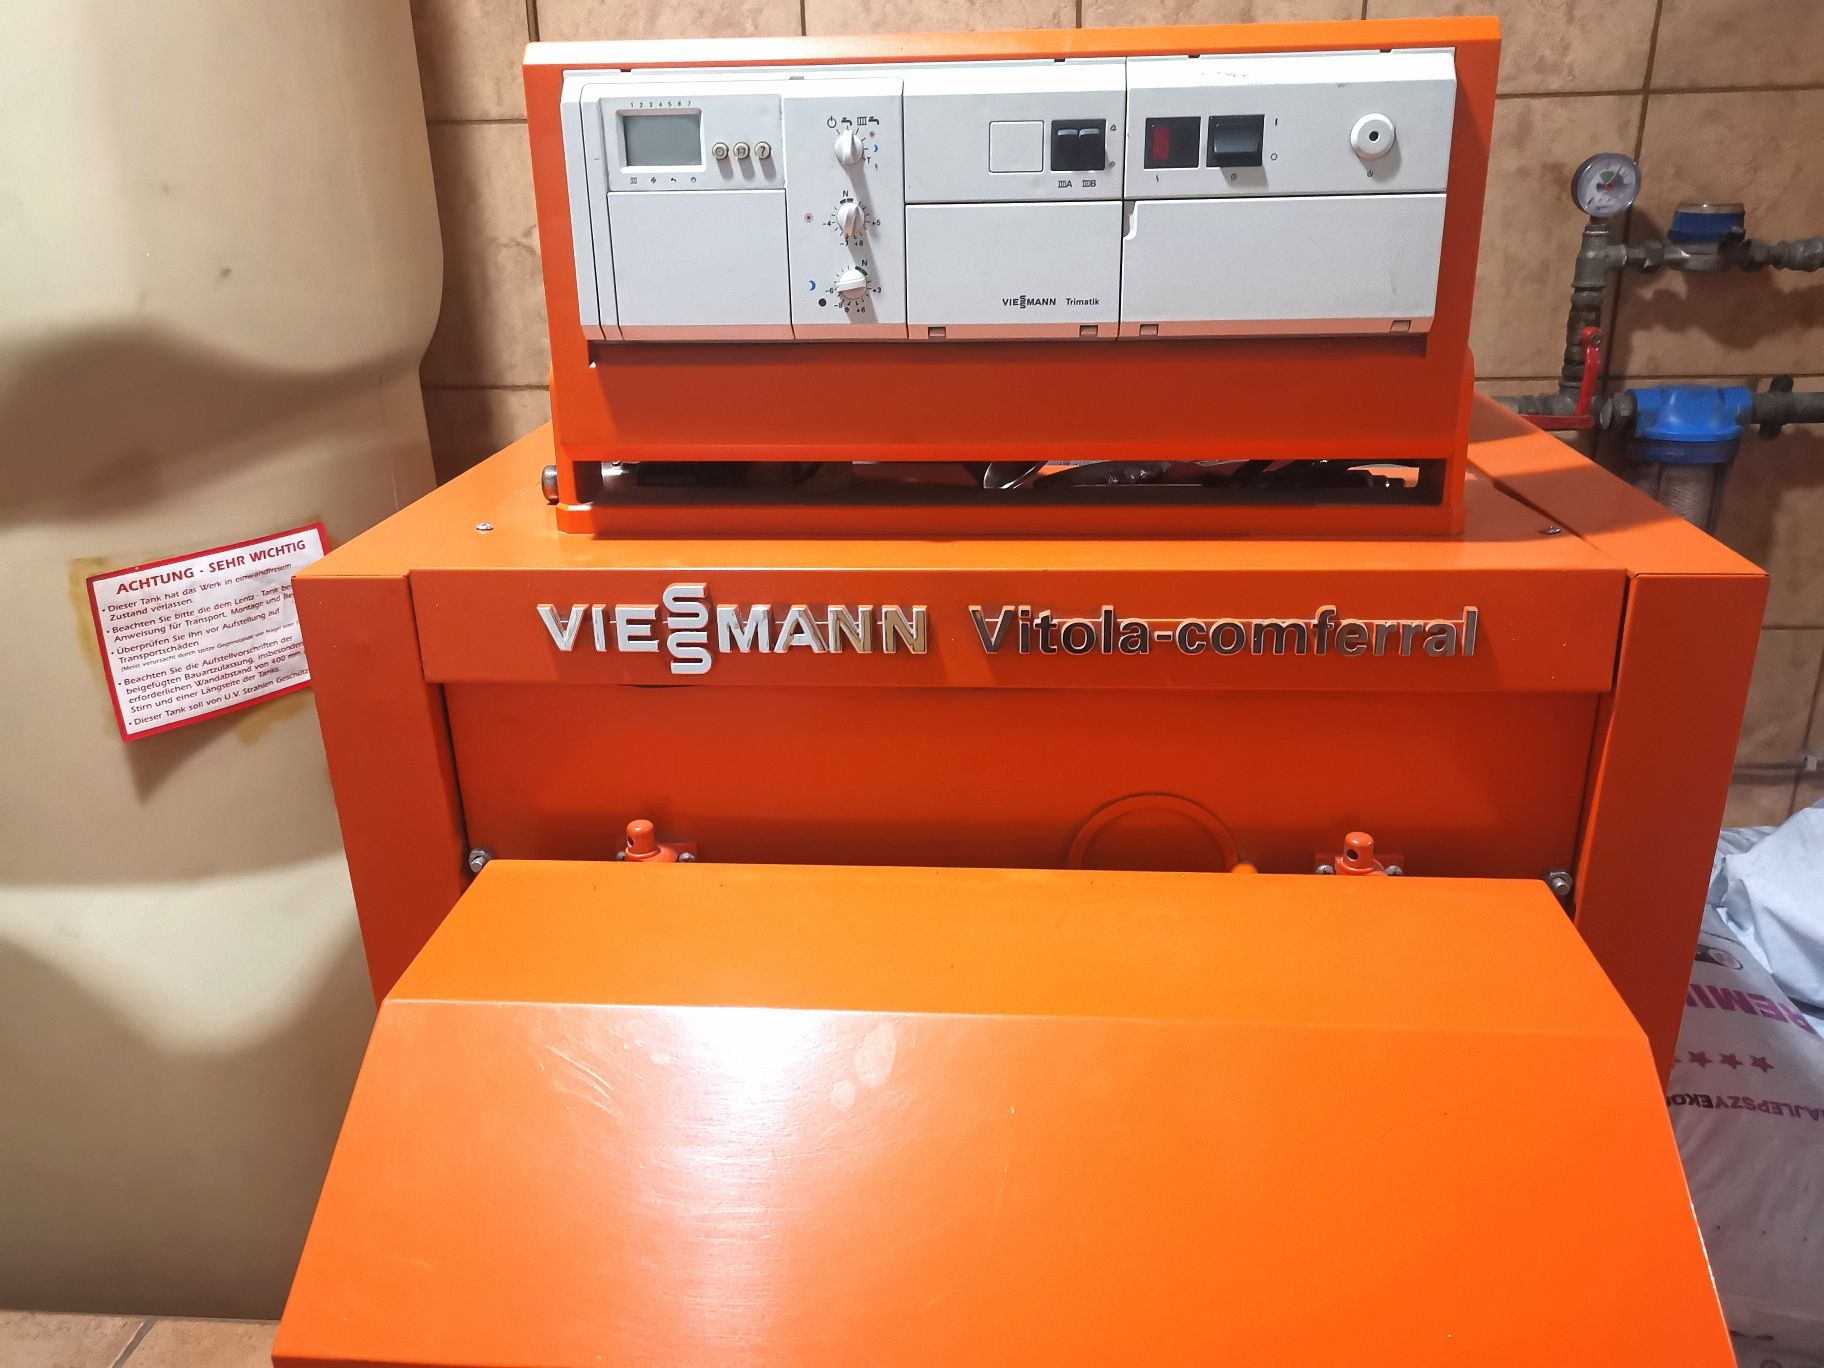 Kocioł olejowy Viessmann Vitola-comferral VM027